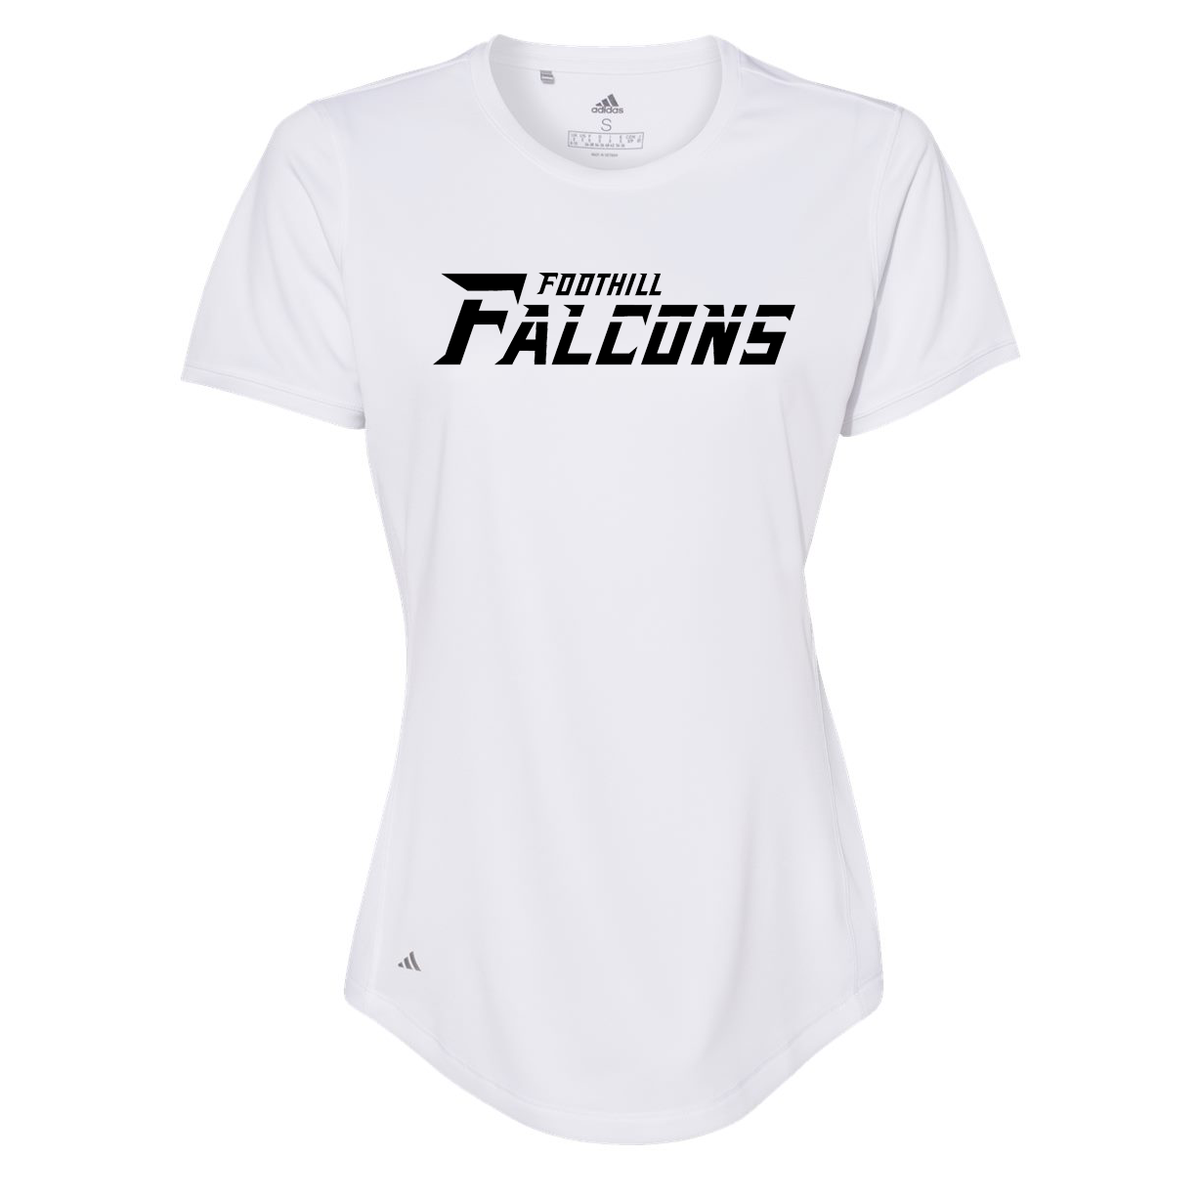 Foothill Falcons Women's Adidas Sport T-Shirt